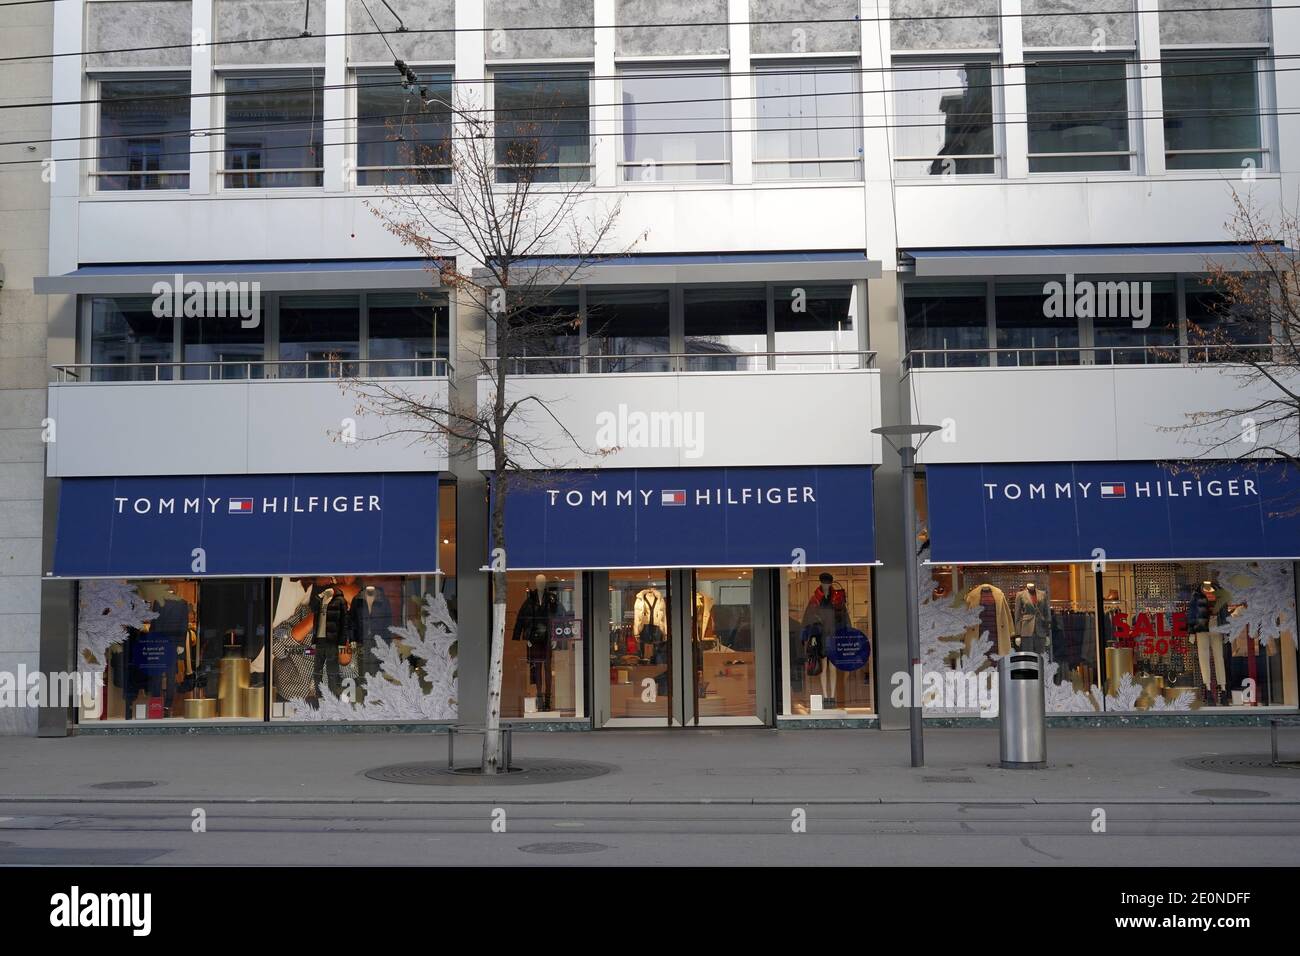 Zurich, Suisse - 20 12 2020: Tommy Hilfiger boutique à Zurich Suisse. Maison de mode américaine. Banque D'Images